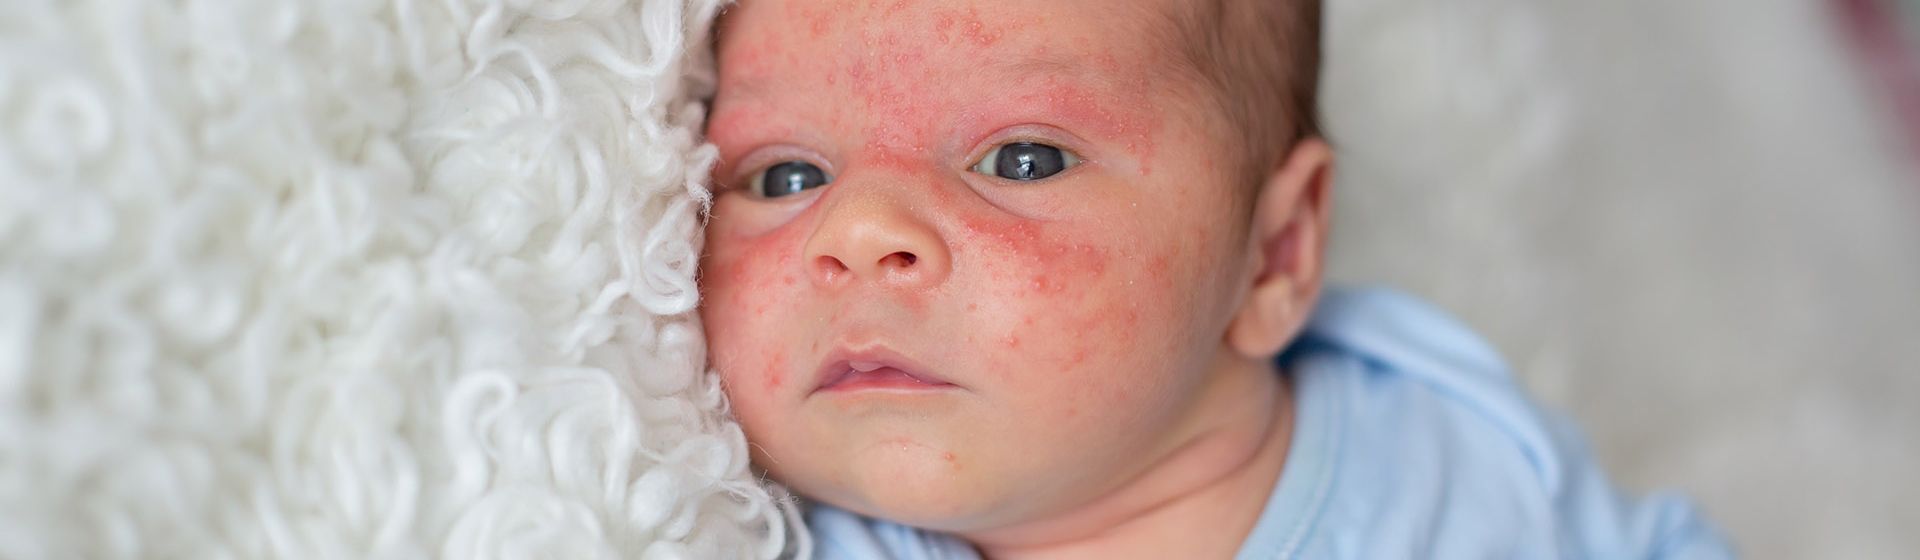 Красные щеки и температура у ребенка: причины и последствия